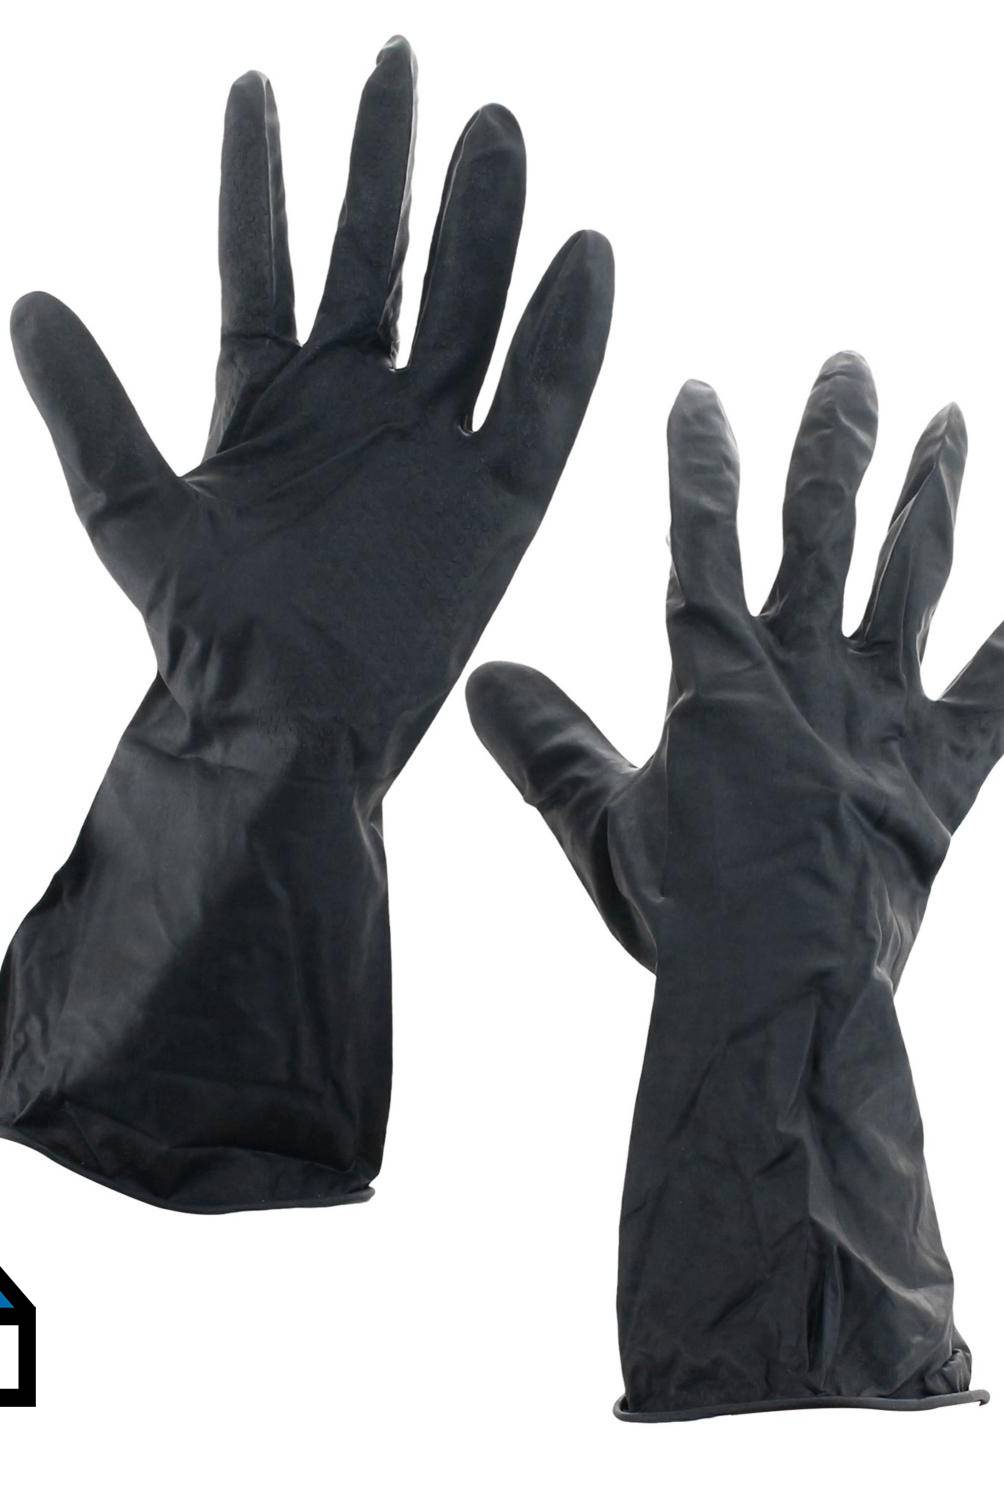 KARSON - Pack de 6 pares de guantes látex albañil